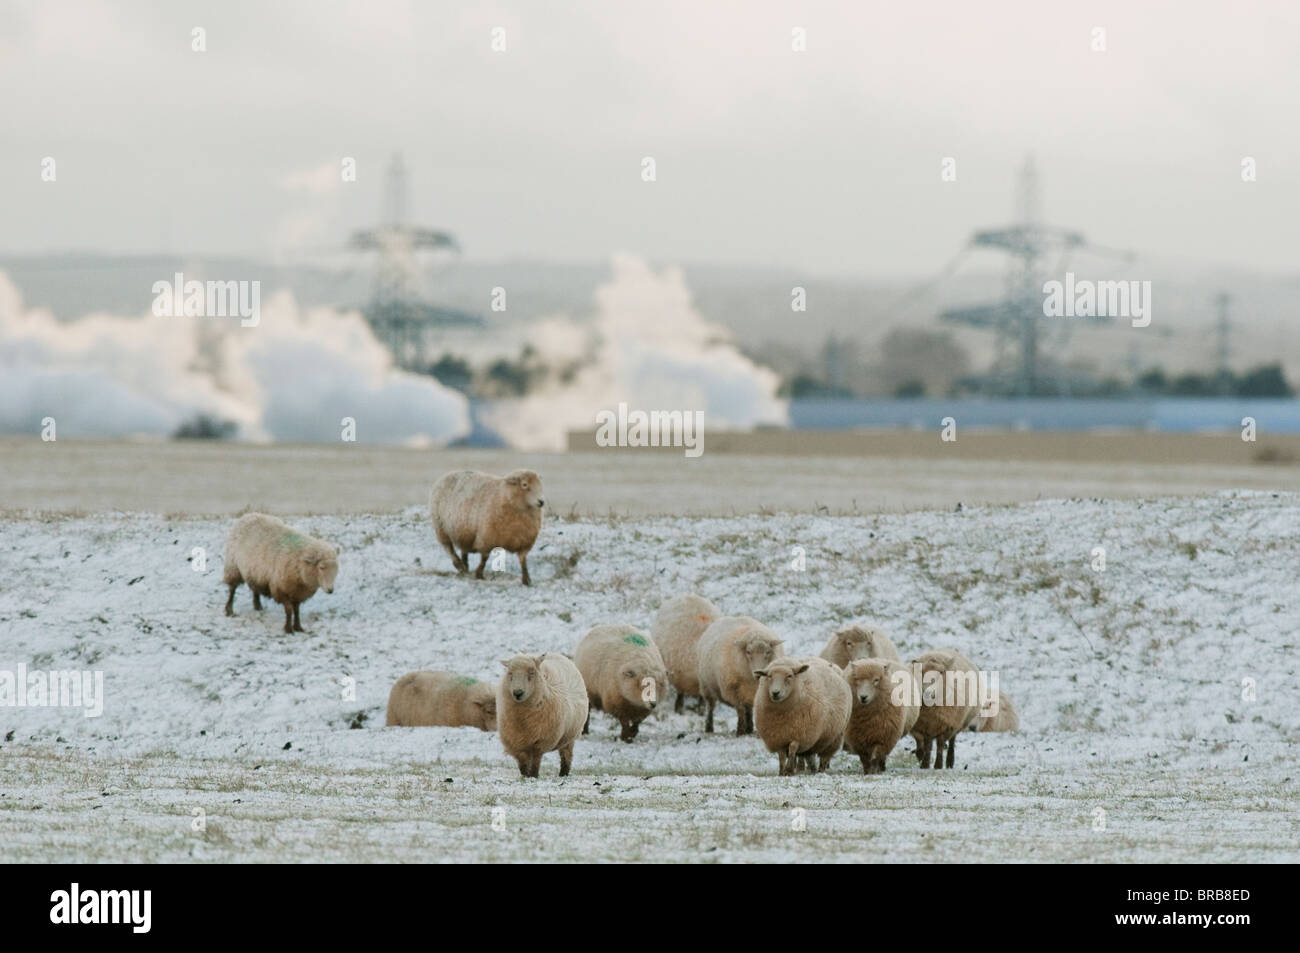 Moutons Romney, marcher dans la neige, Marais d'Elmley NNR, à l'île de Sheppey, Kent, Angleterre, hiver Banque D'Images